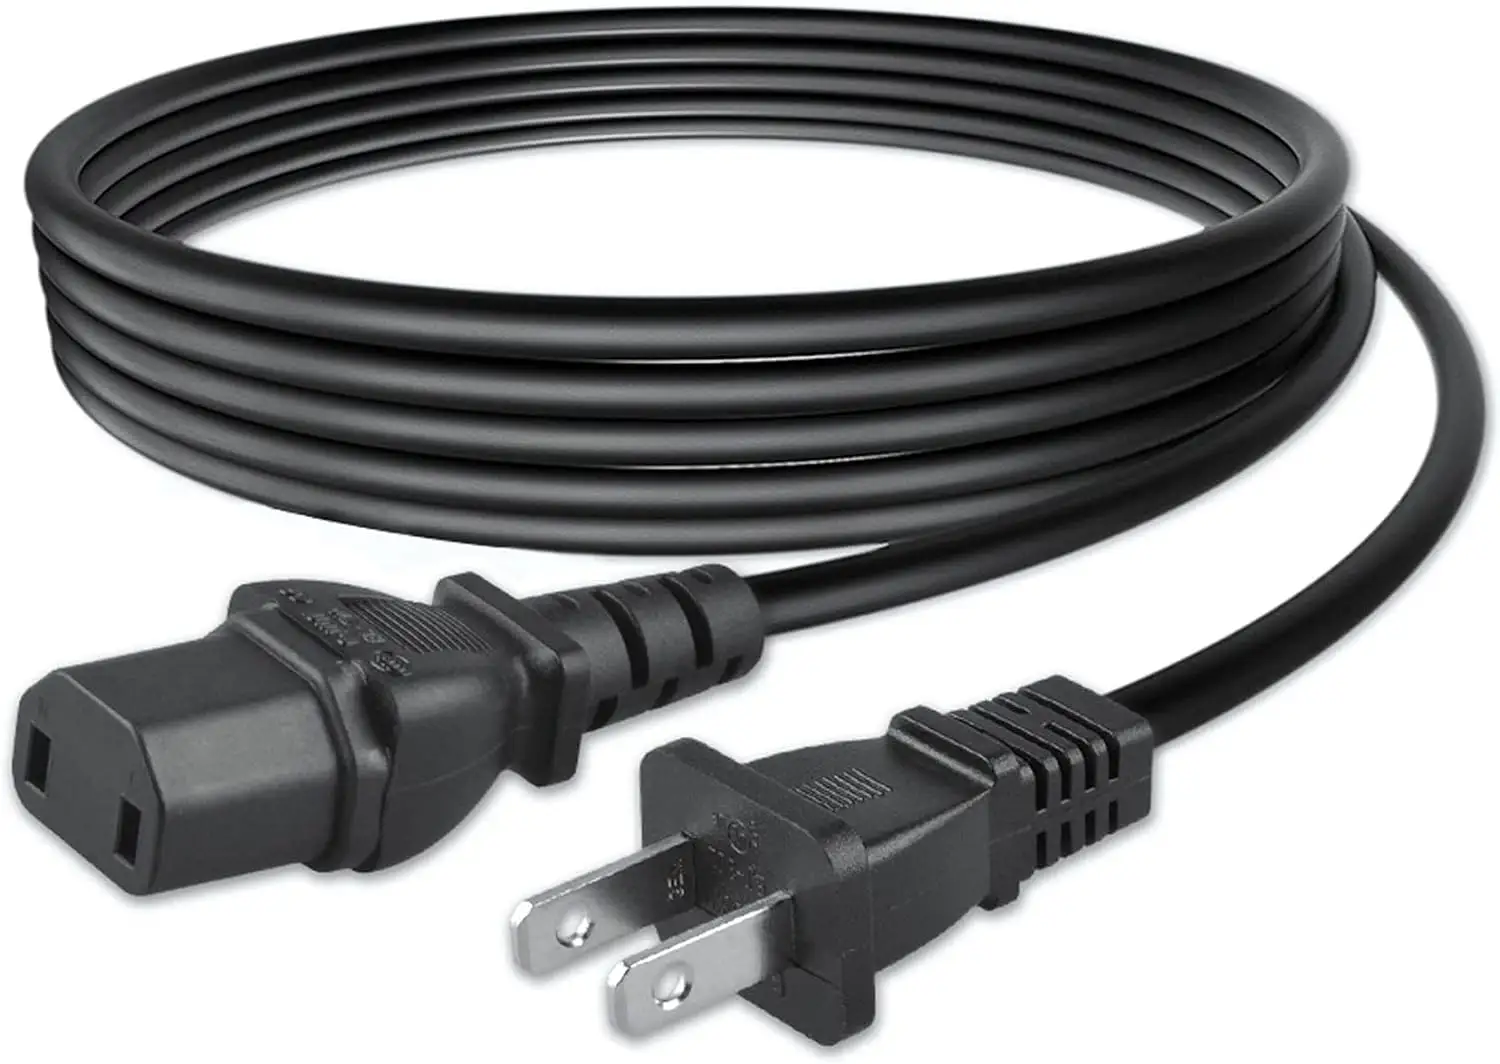 3C 인증 0.75mm2 2 구 수 ~ IEC 320 C7 그림 8 커넥터 AC 전원 공급 장치 케이블 가전 제품